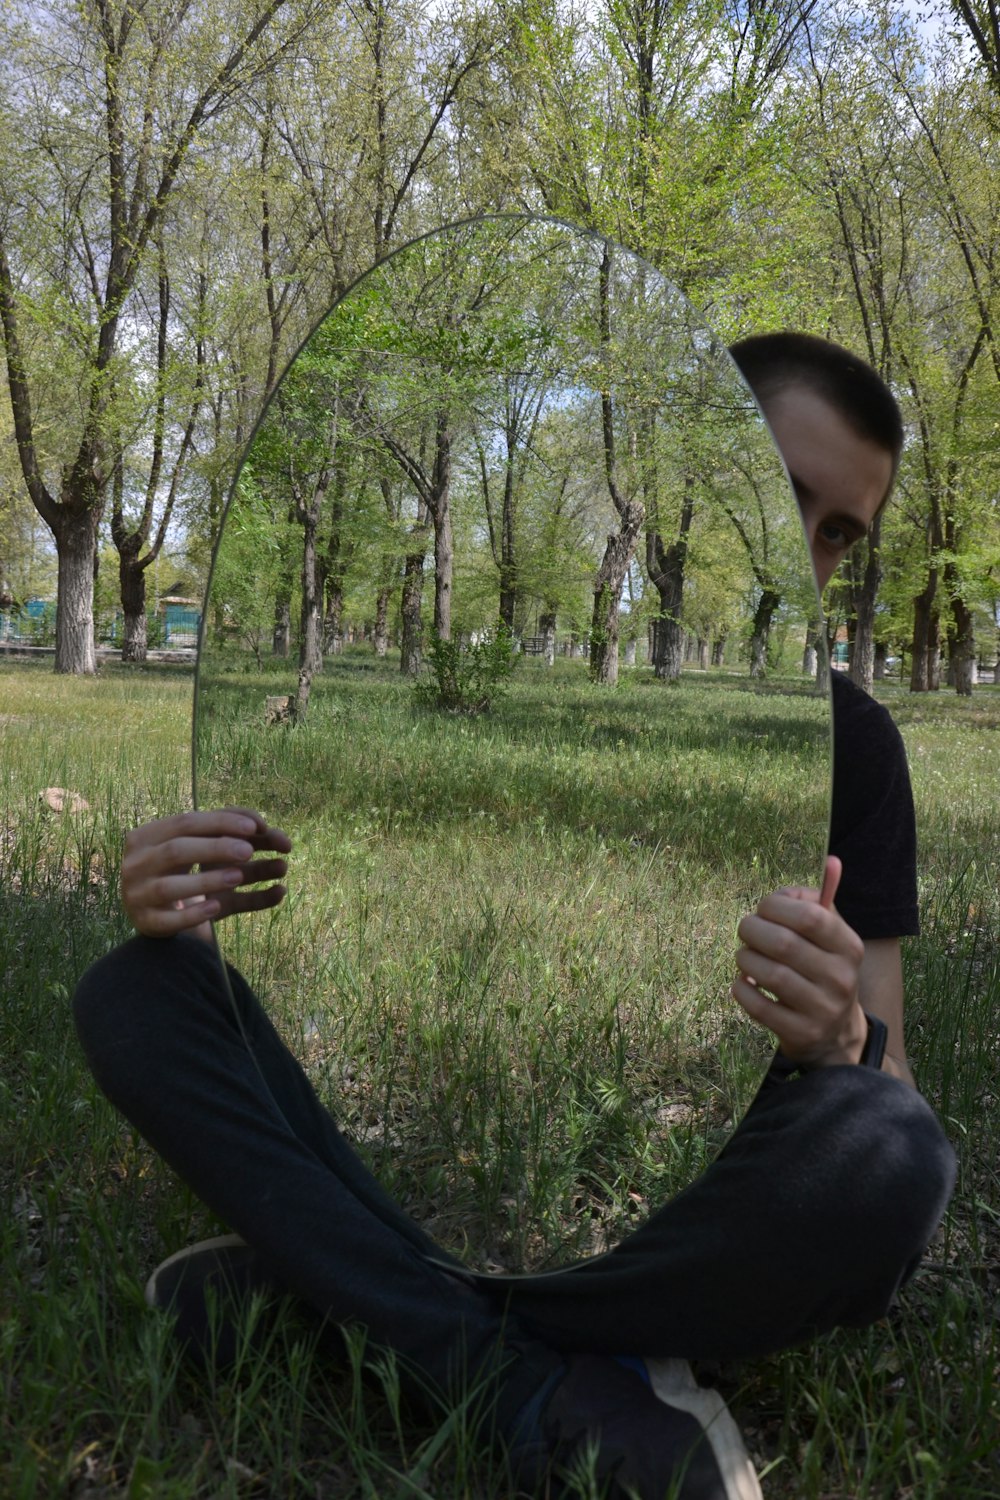 una persona sdraiata sulla schiena in una zona erbosa con alberi sullo sfondo